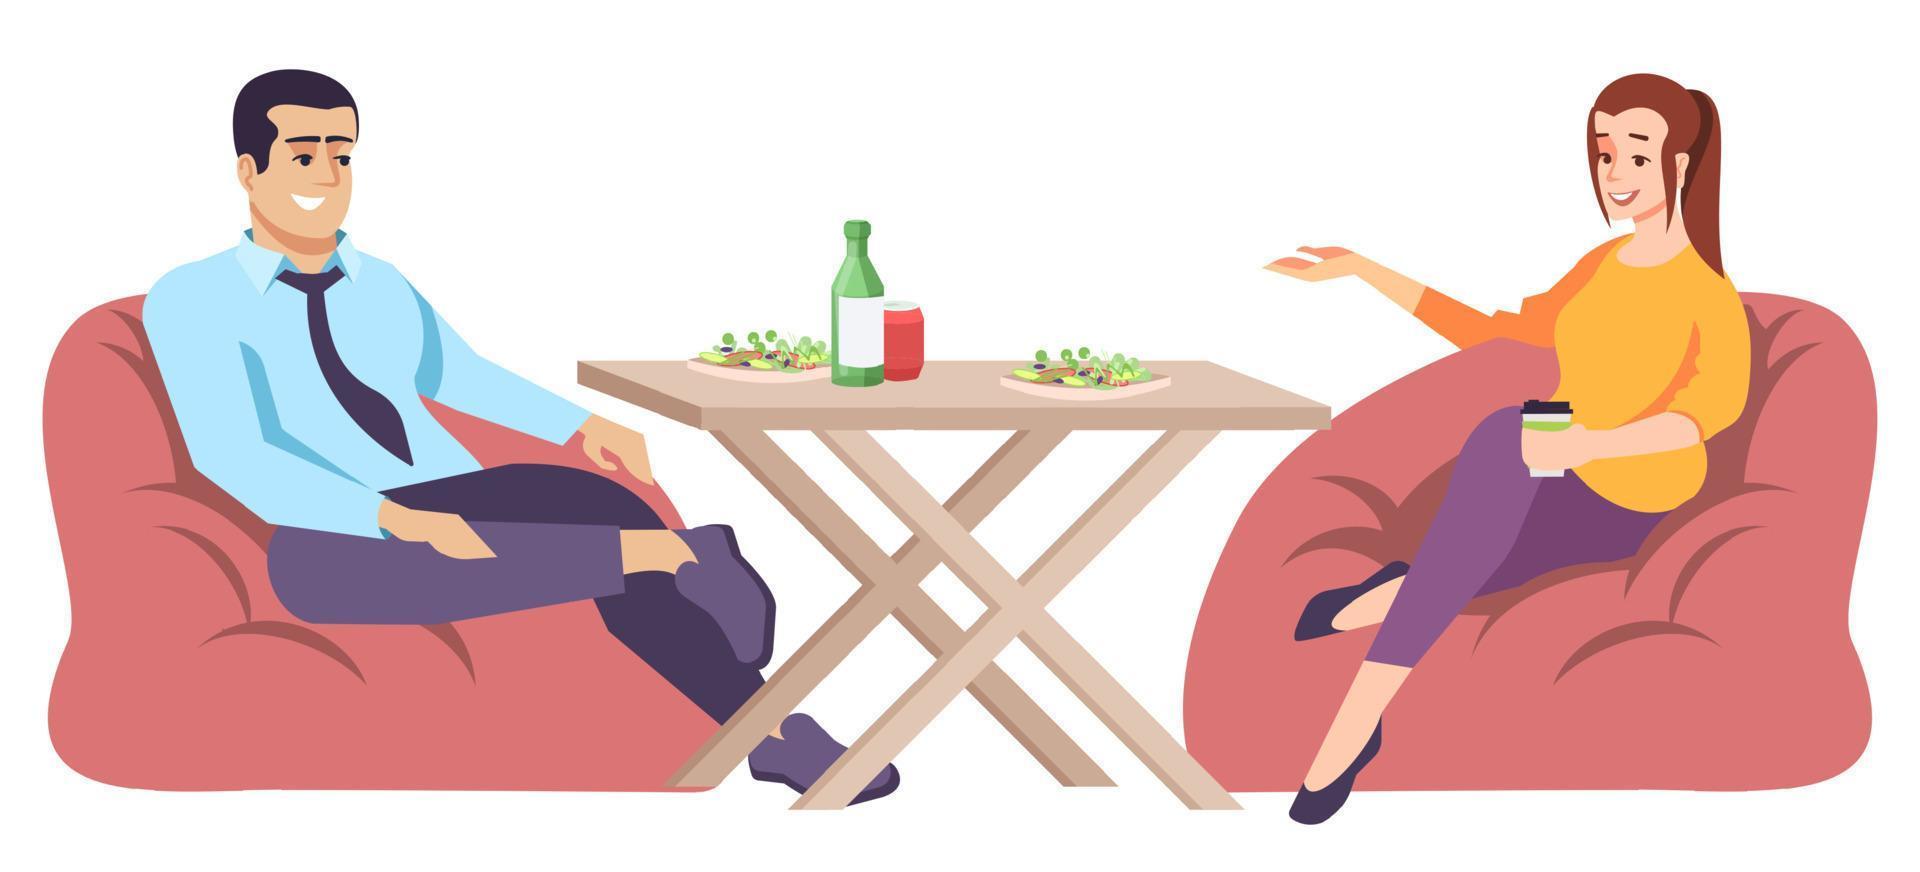 homem e mulher na ilustração em vetor plana mesa. cupê de pessoas falando no almoço, sentados em cadeiras de saco.